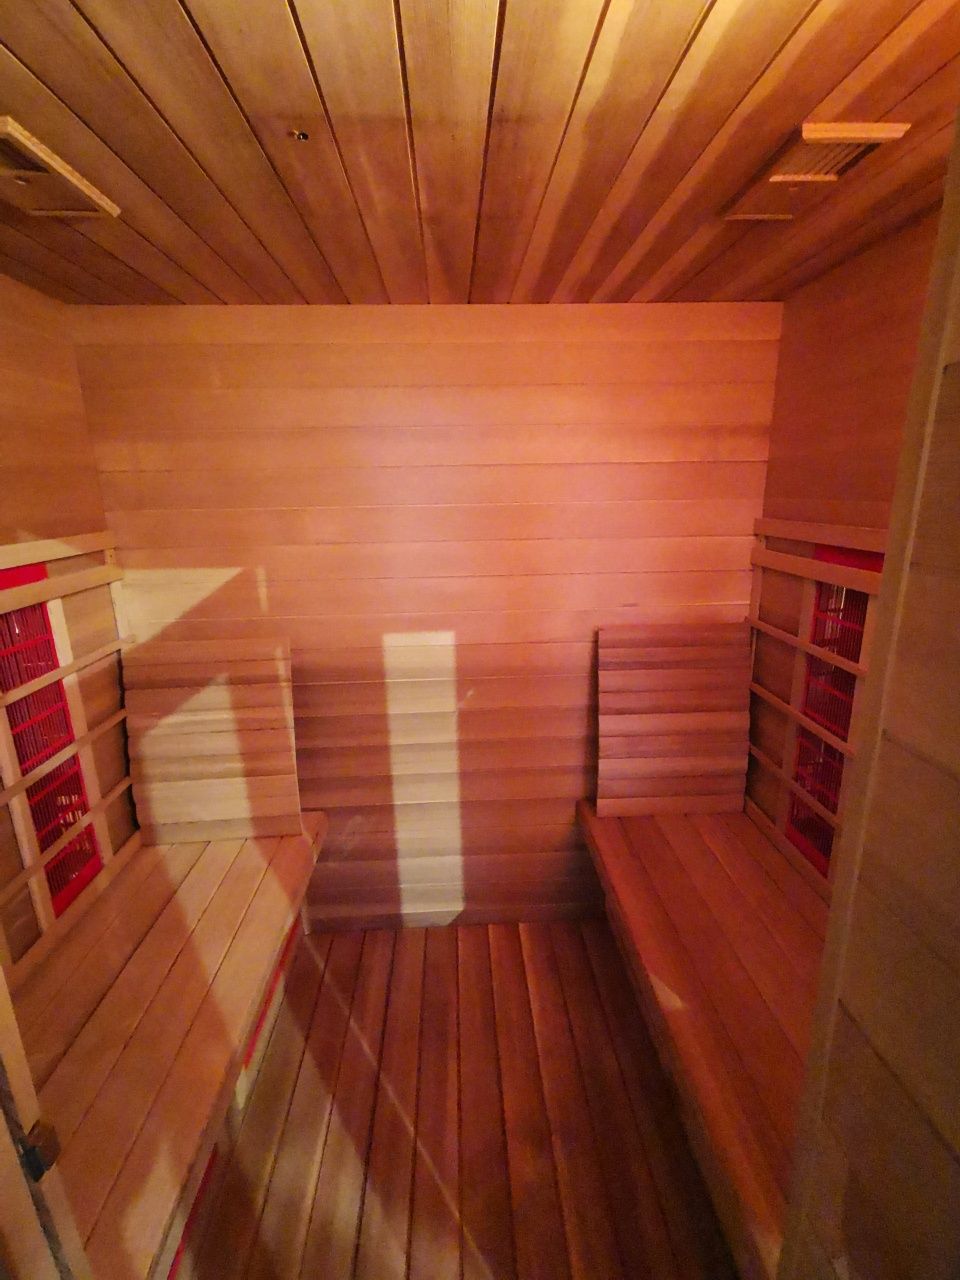 Okazja duża rodzinna sauna sucha typu infrared XL dla 4 osób